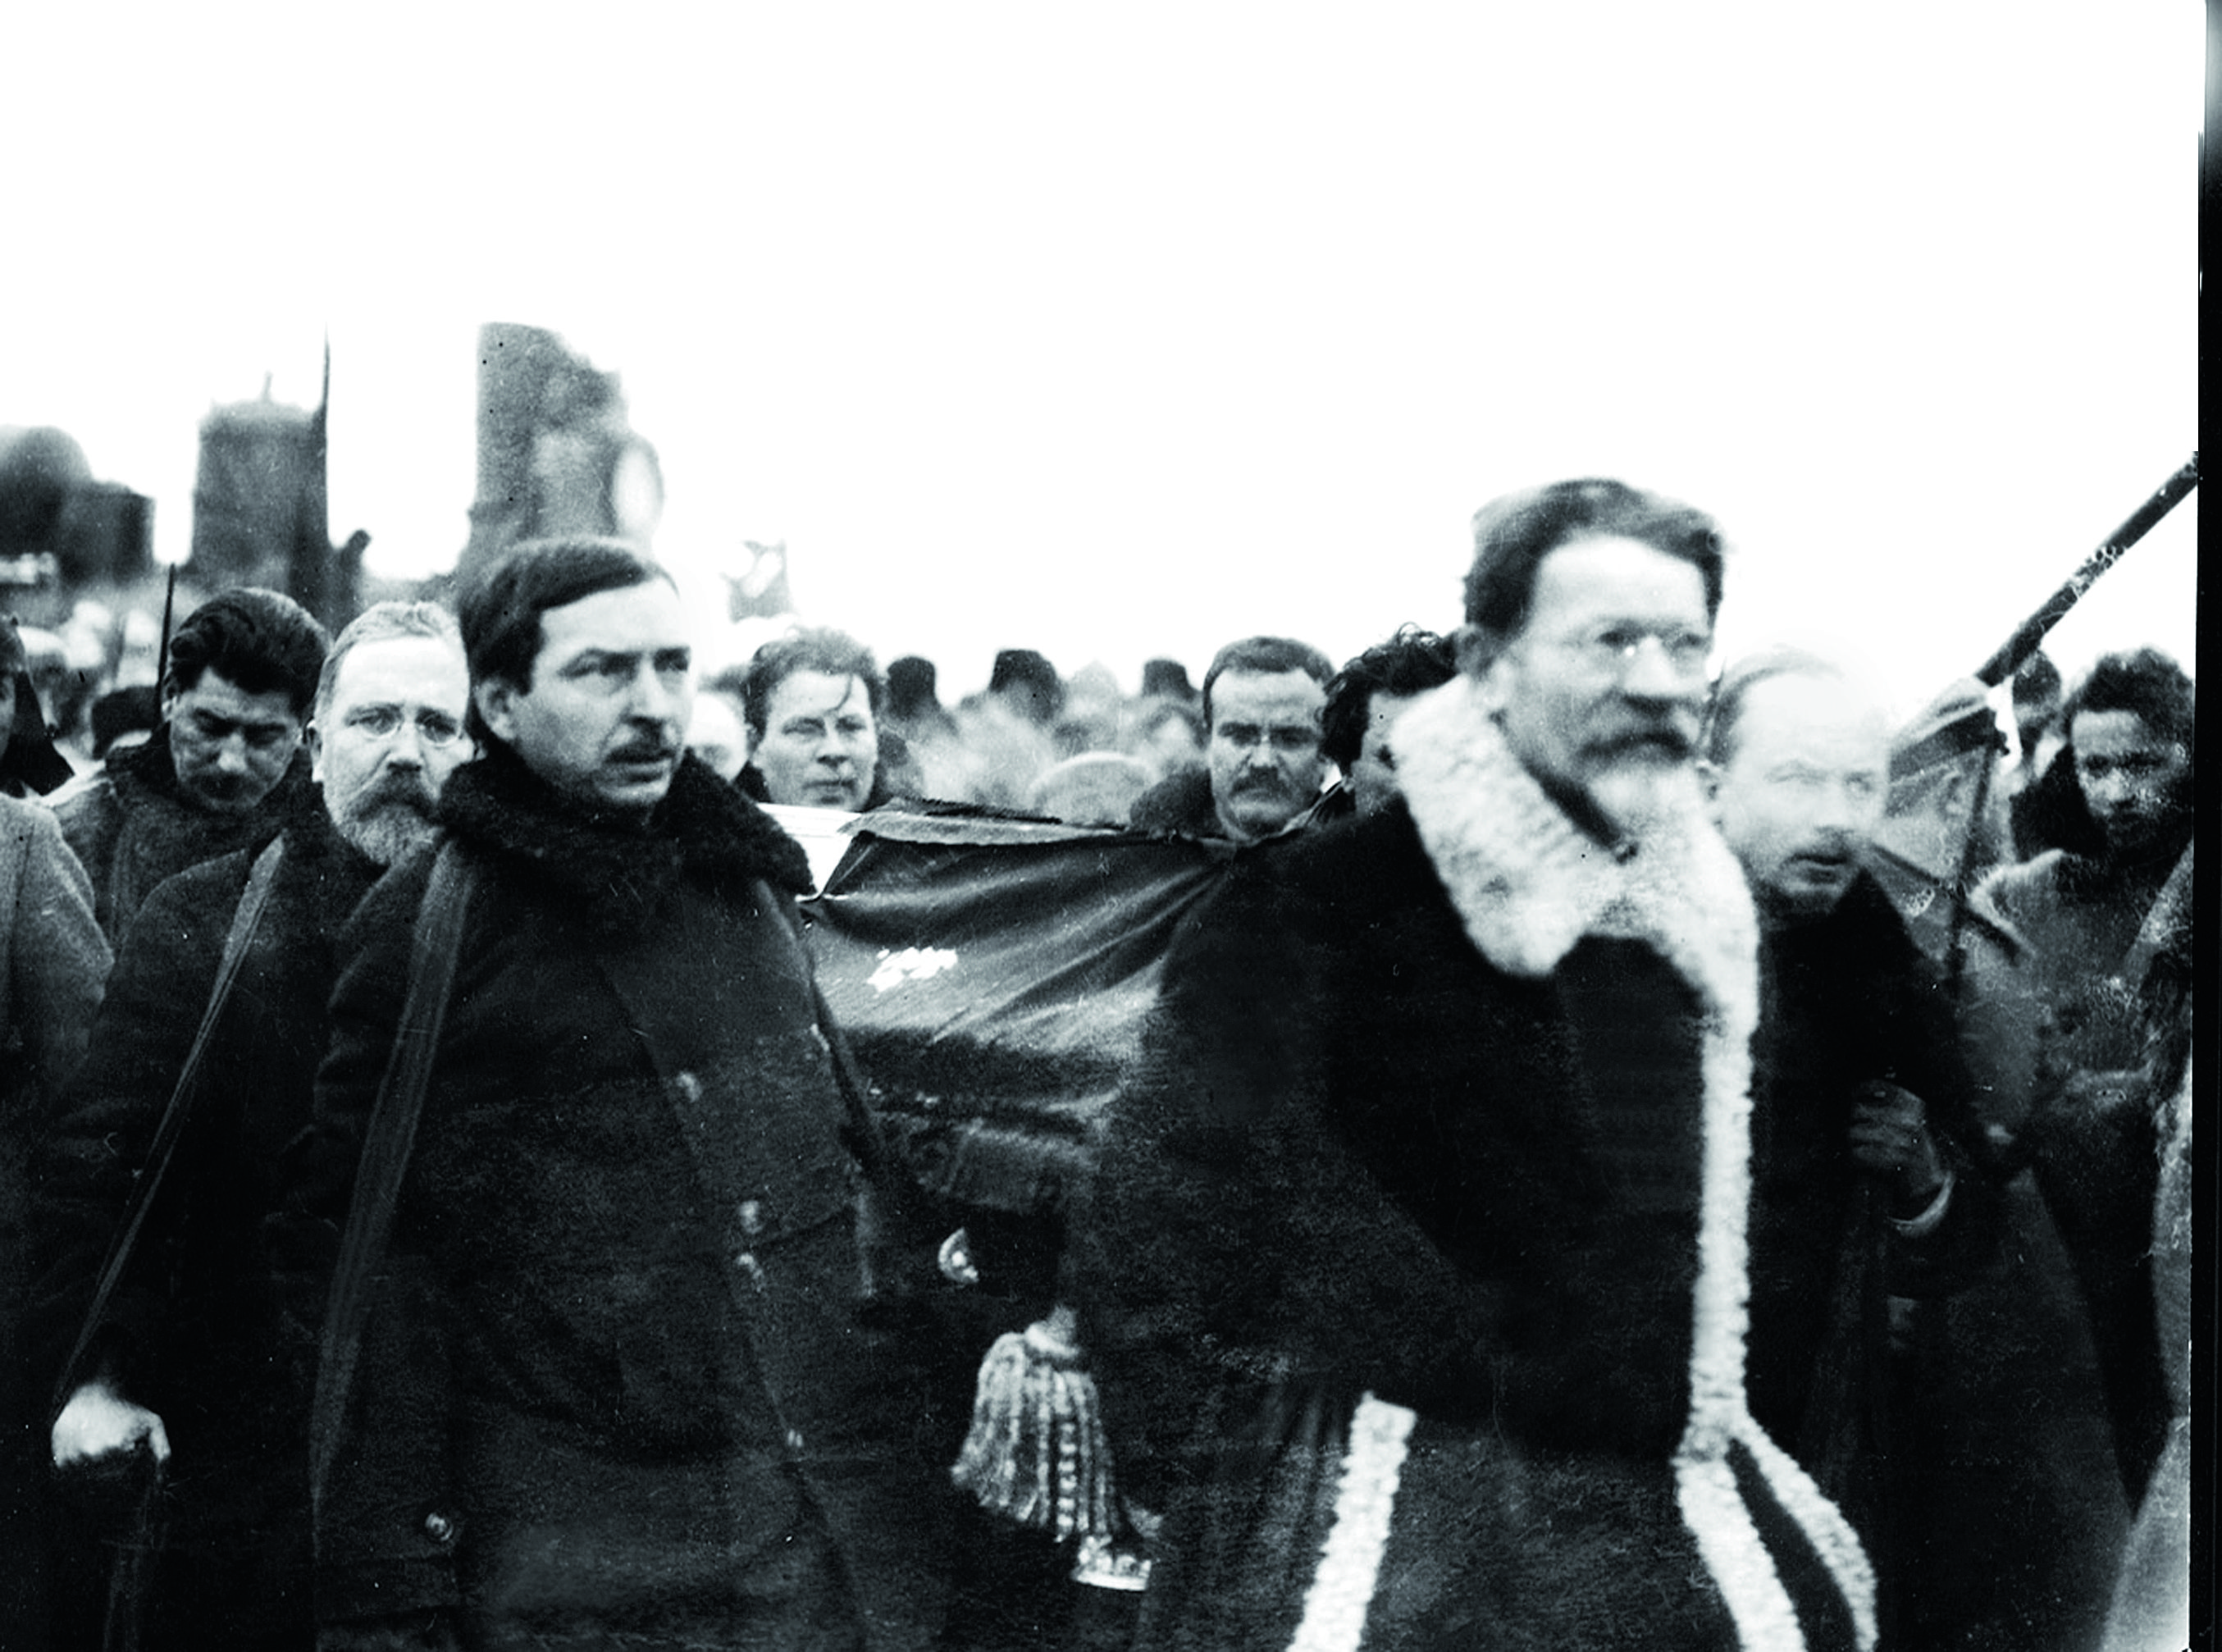 Гроб с телом Ленина несут Сталин, Каменев, Томский, Калинин, Бухарин, Молотов.jpg